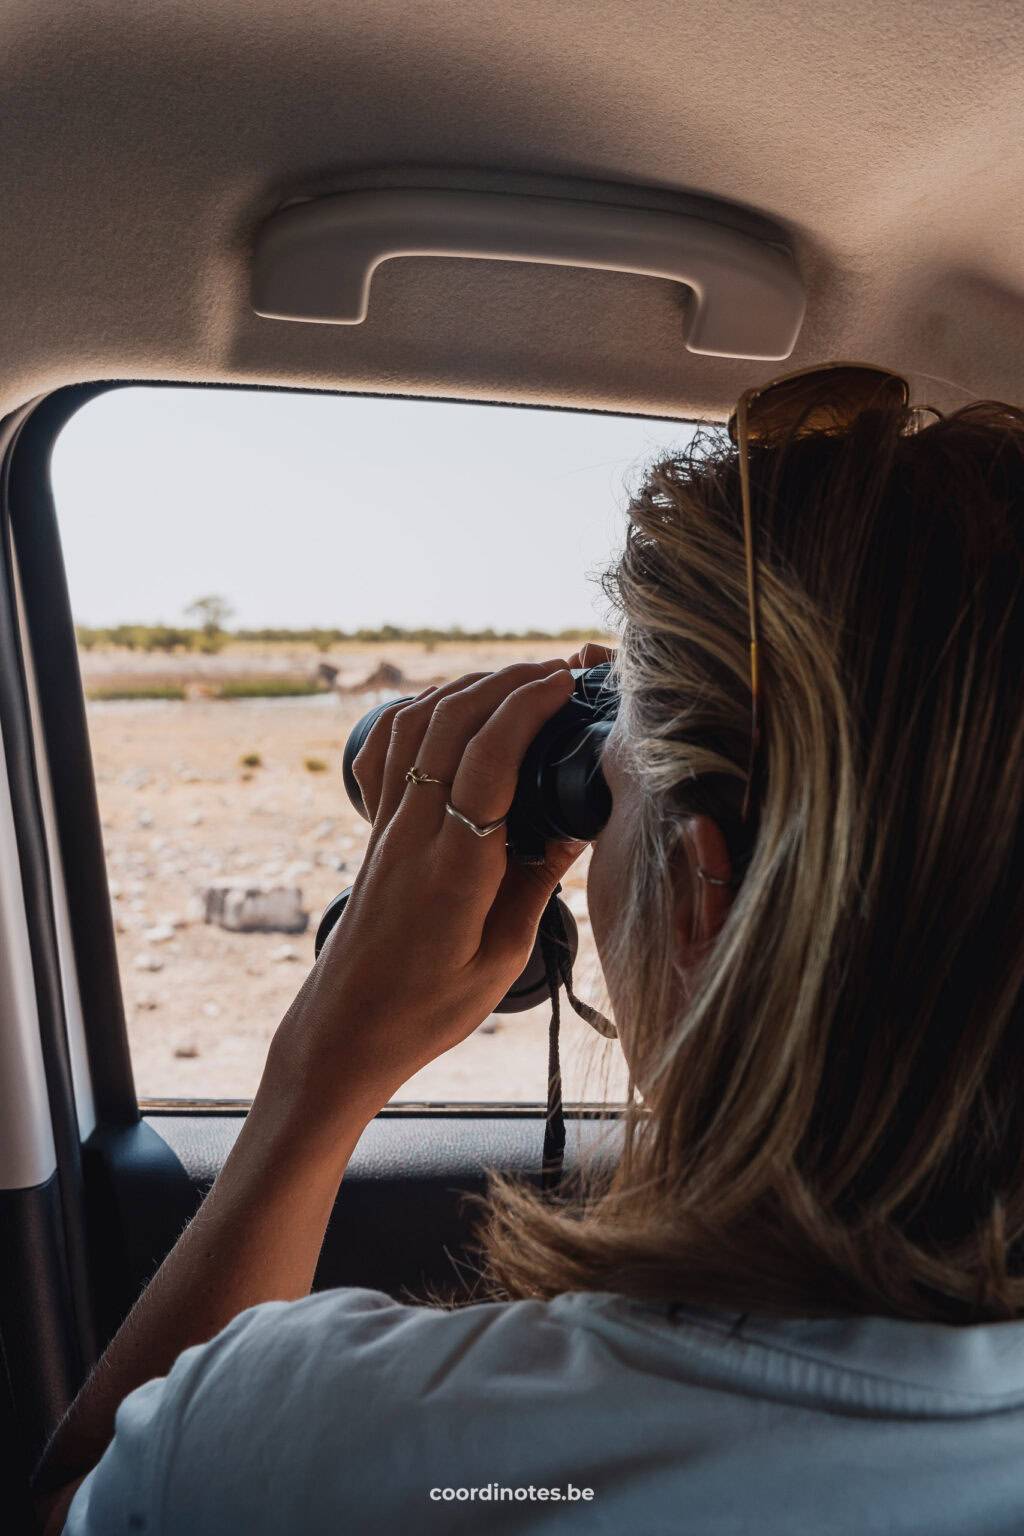 Binoculars are a must on safari!